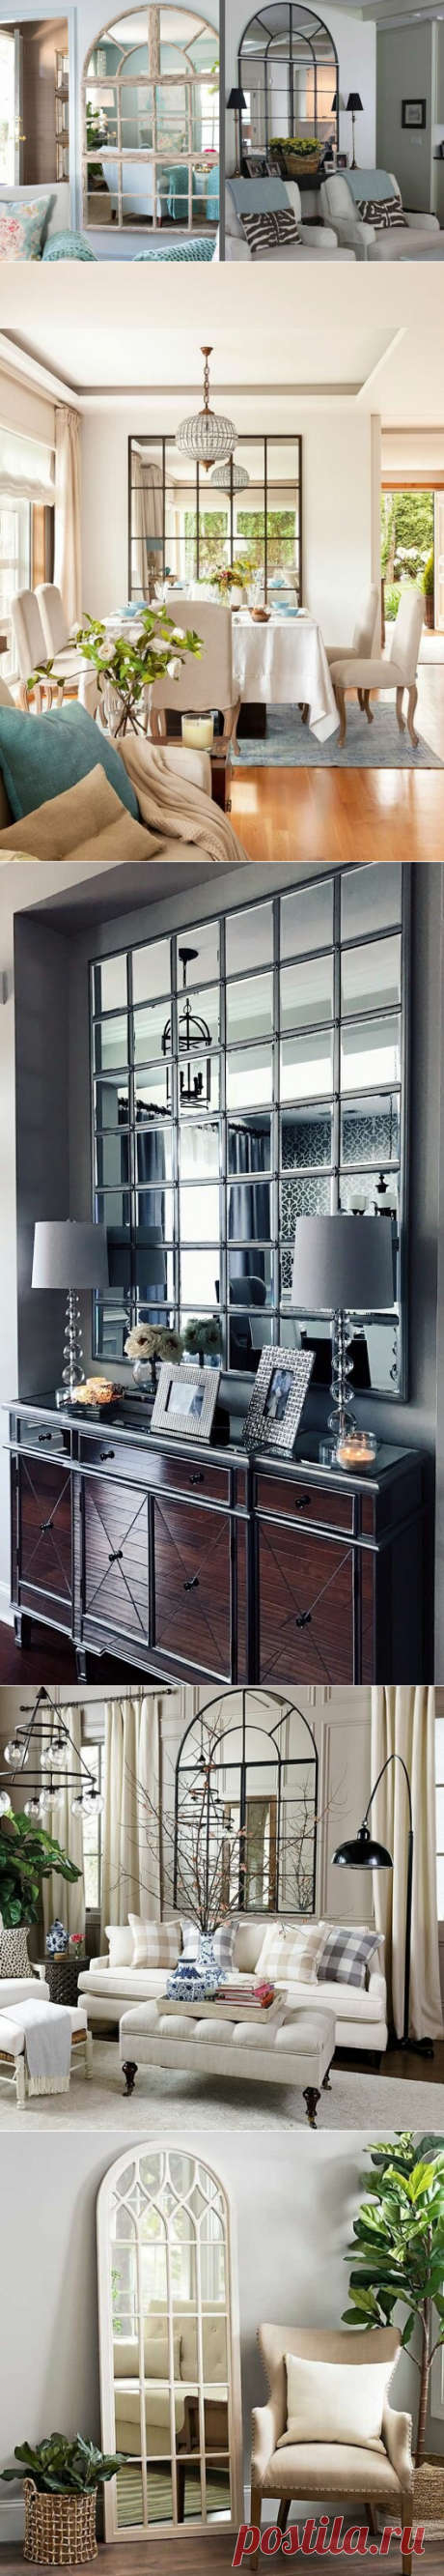 Зеркало в оконной раме: темный угол комнаты наполнится солнечным светом | угол зрения | Яндекс Дзен